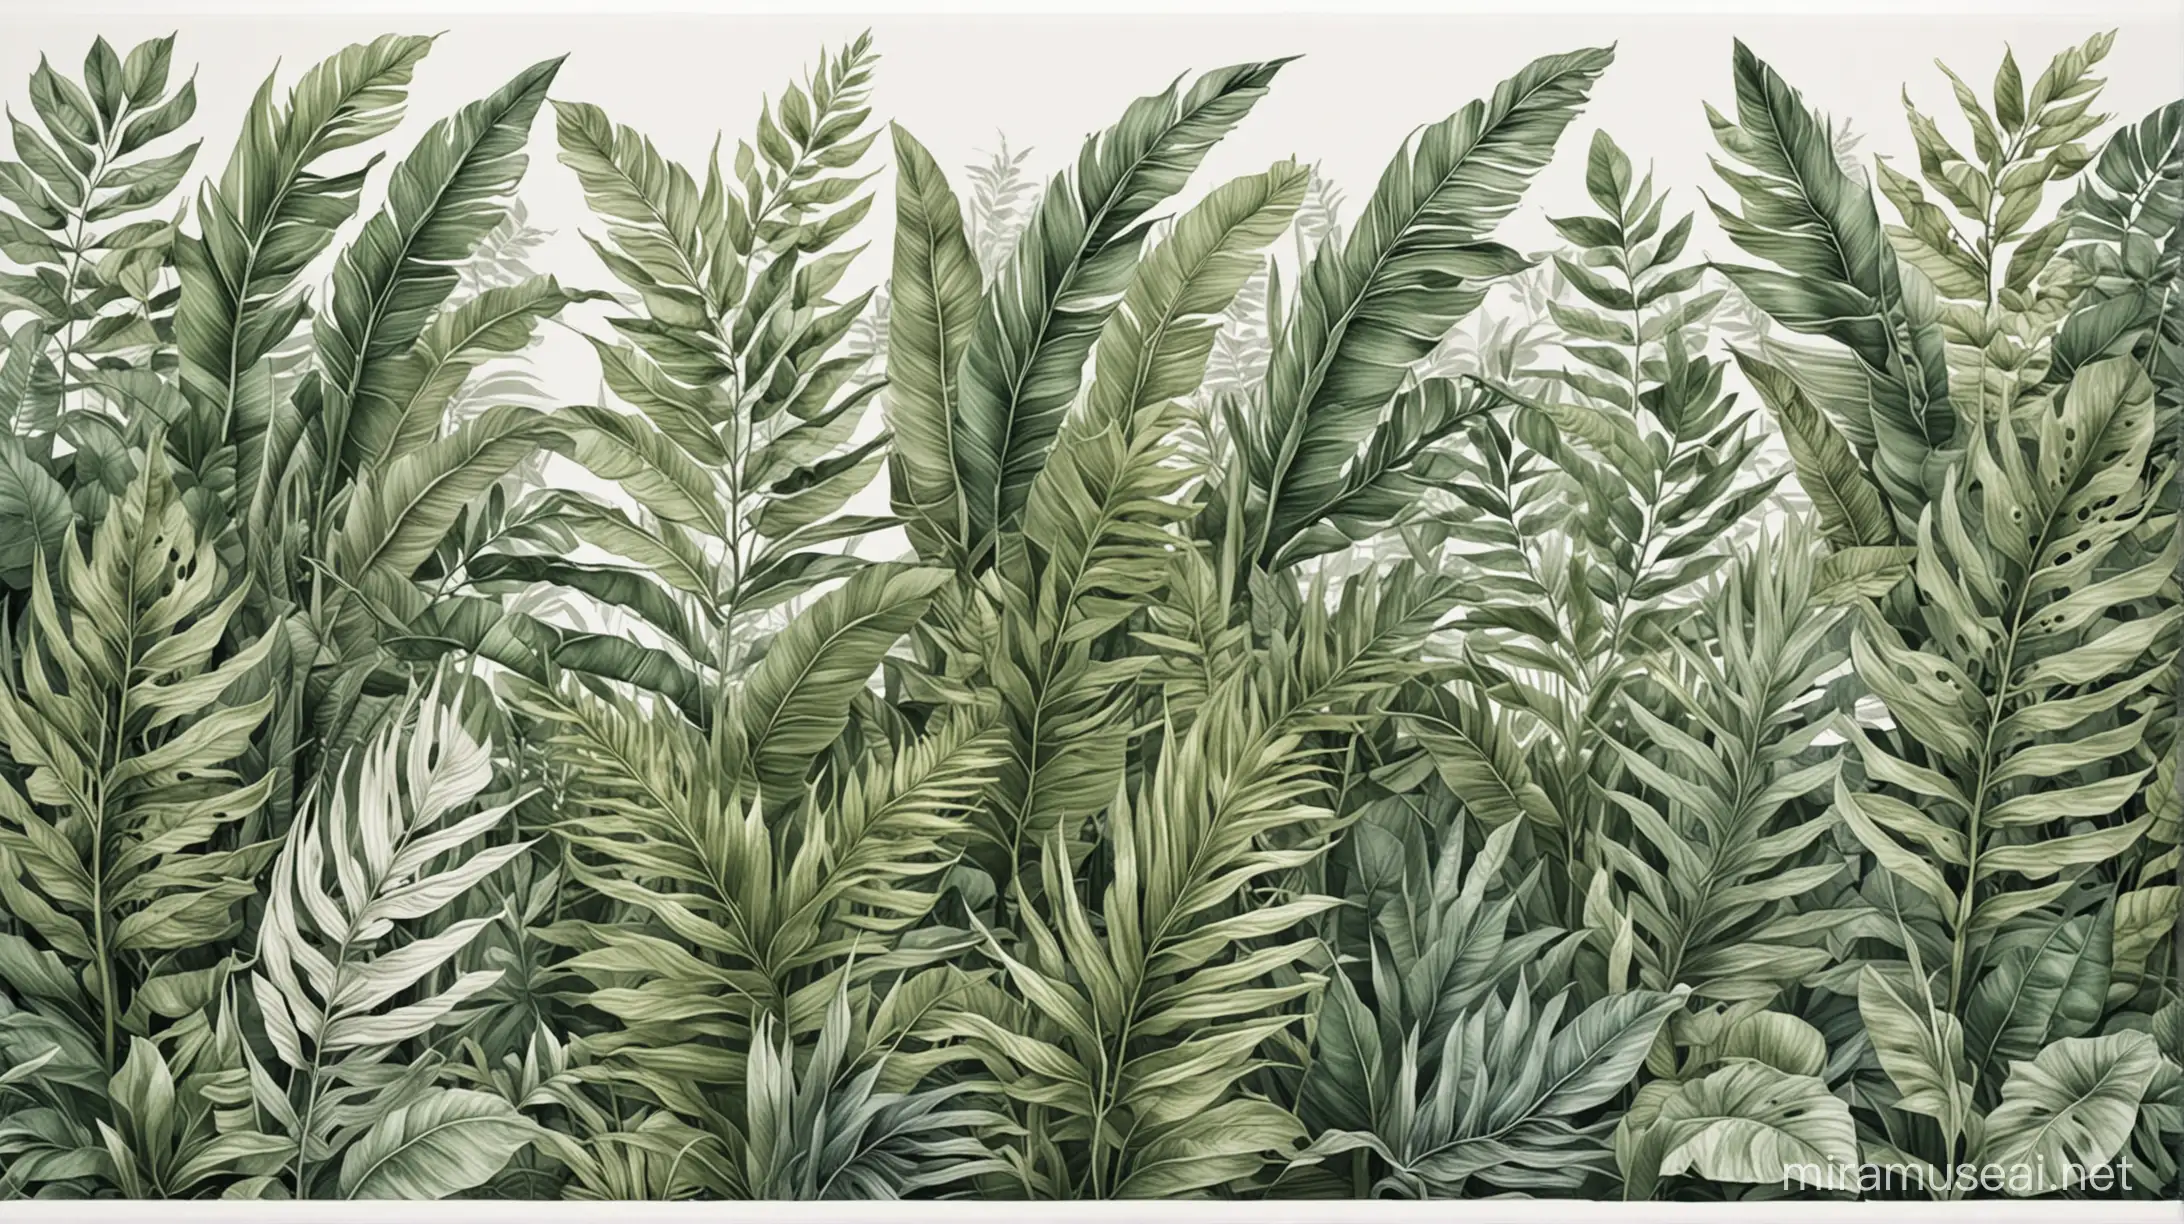 tropikalna bujna roślinność. liście malowane w jednej poziomej linii jeden obok drugiego. stonowana kolorystyka dodaje ciepła. malowane w stylu rysunku odręcznego. białe tło